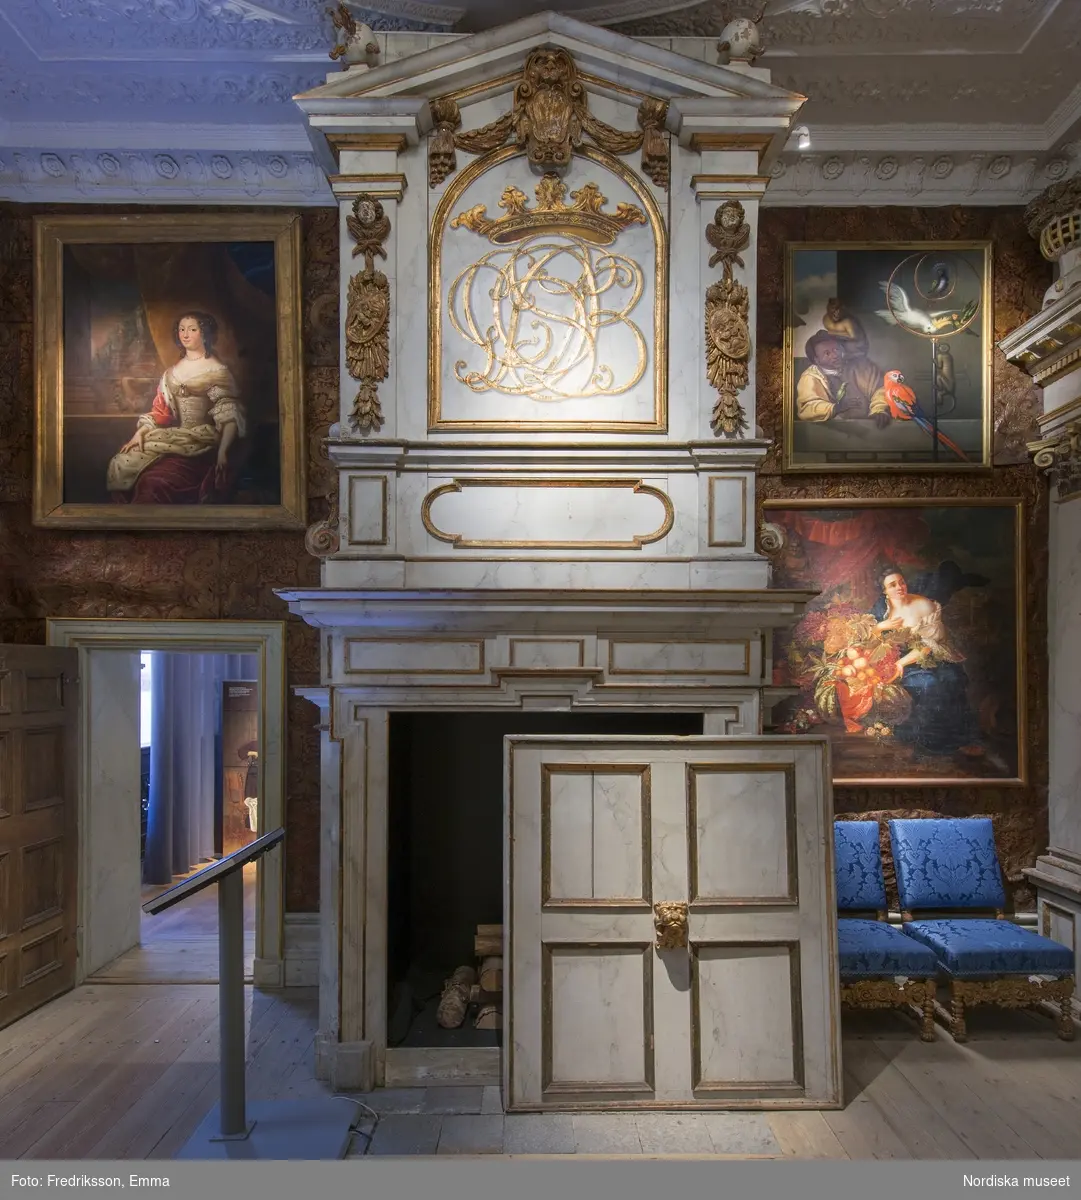 Utställningsdokumentation, Nordiska museet. Paradsängkammaren från Ulvsunda slott utanför Stockholm, 1670-talet.